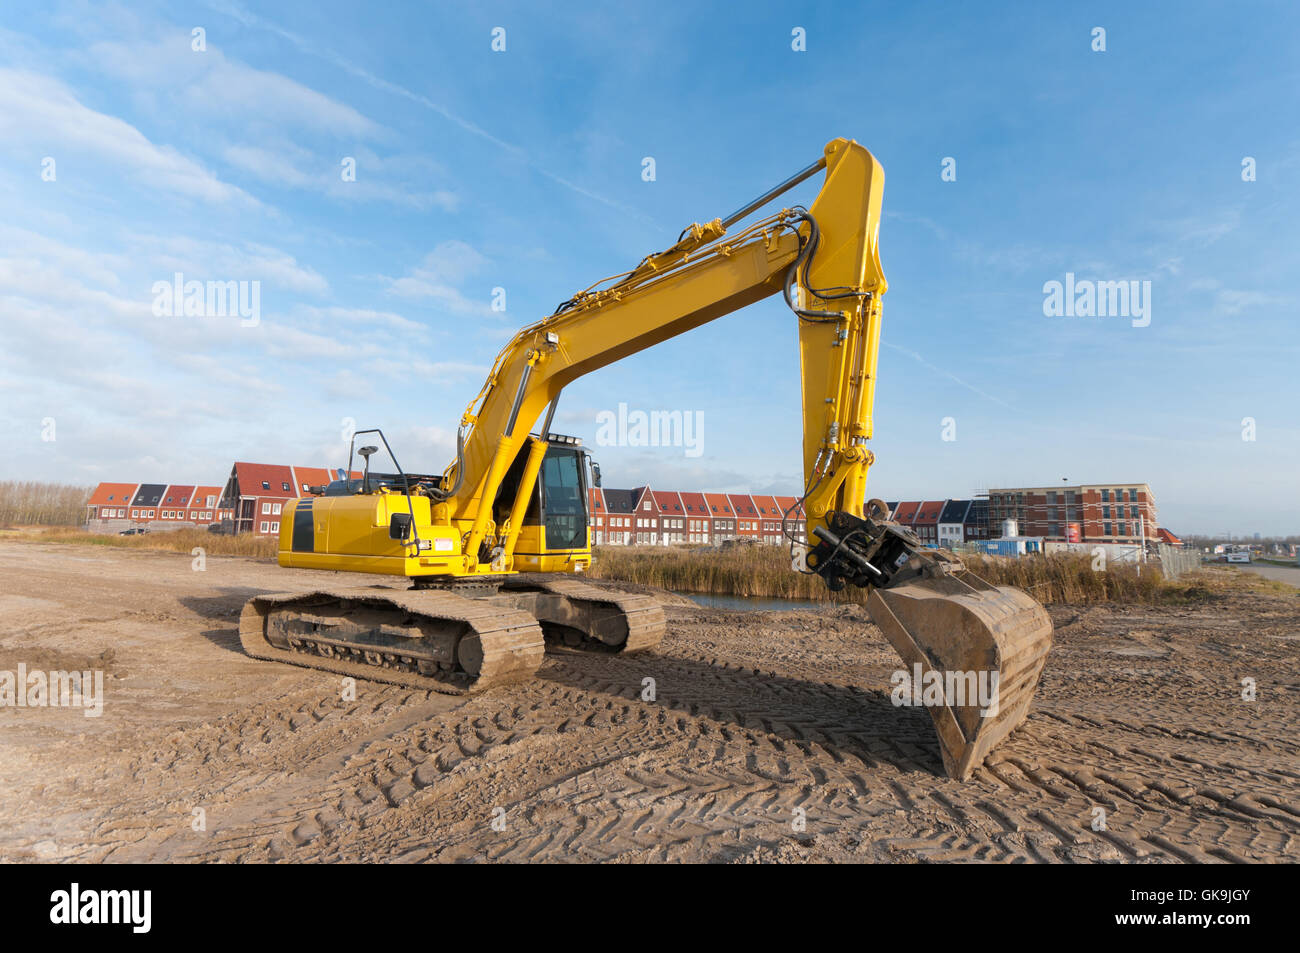 machinery excavator yellow Stock Photo